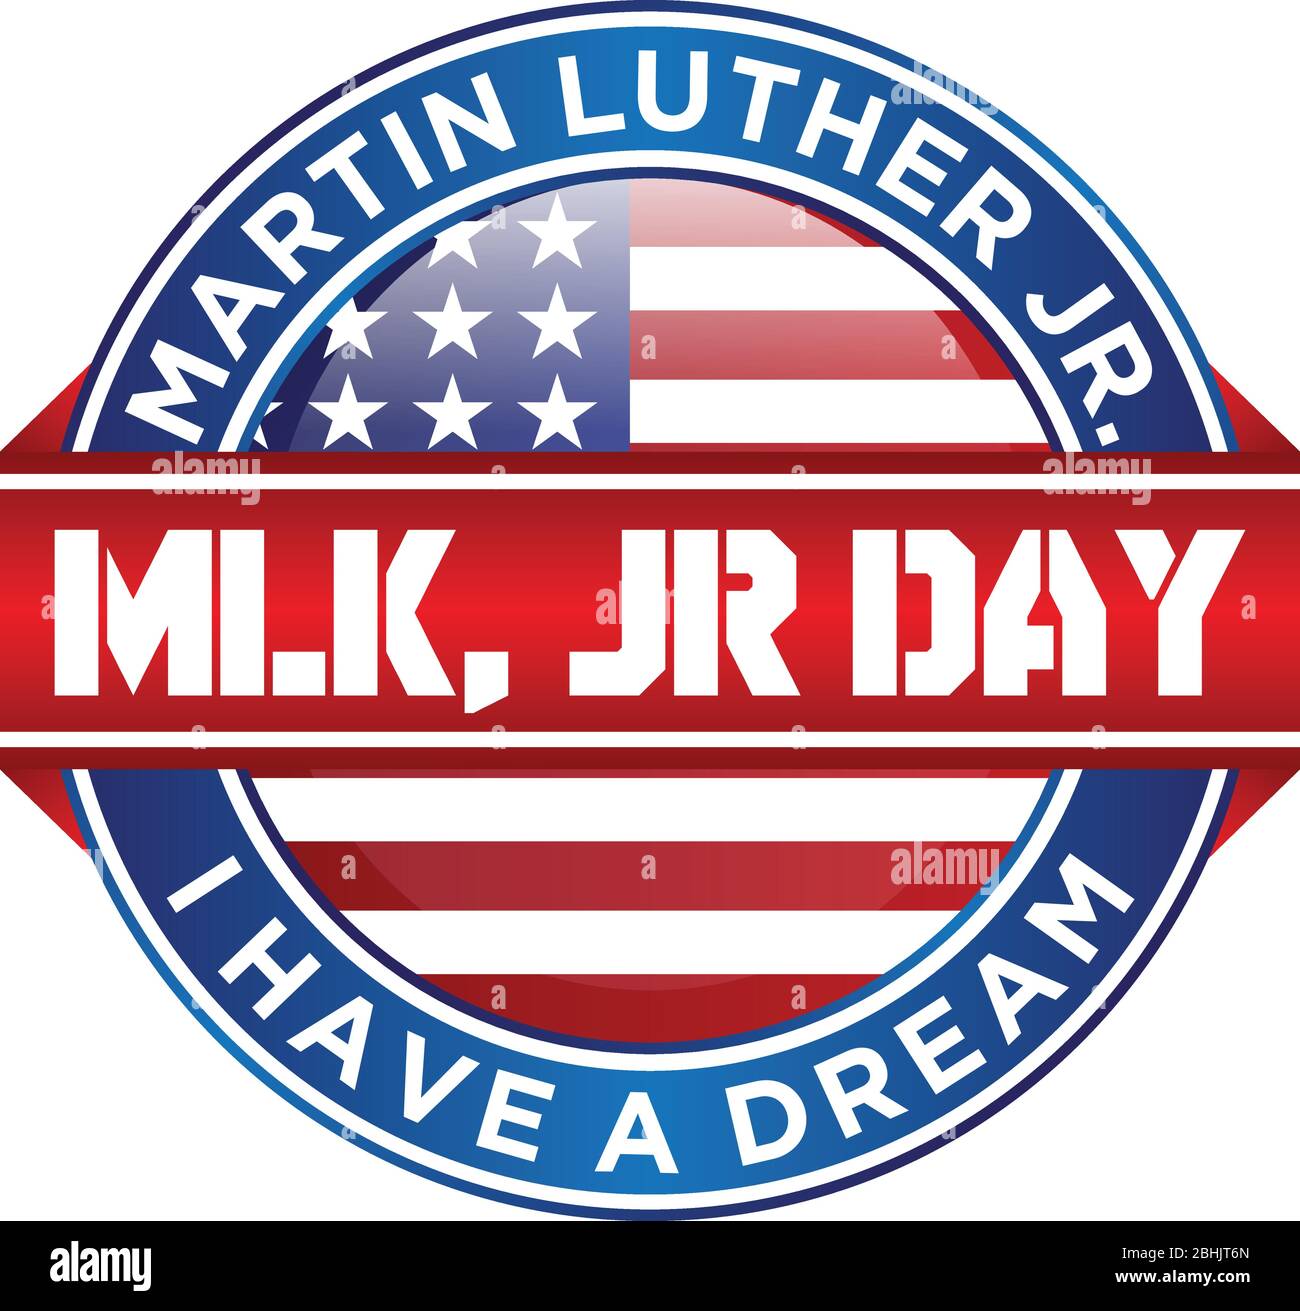 Il simbolo del design Martin Luther King Jr. Day o MLK JR. Disegno di emblema della lettera del giorno sullo sfondo bianco. Elemento di design biglietto d'auguri, banner, poster, ba Illustrazione Vettoriale